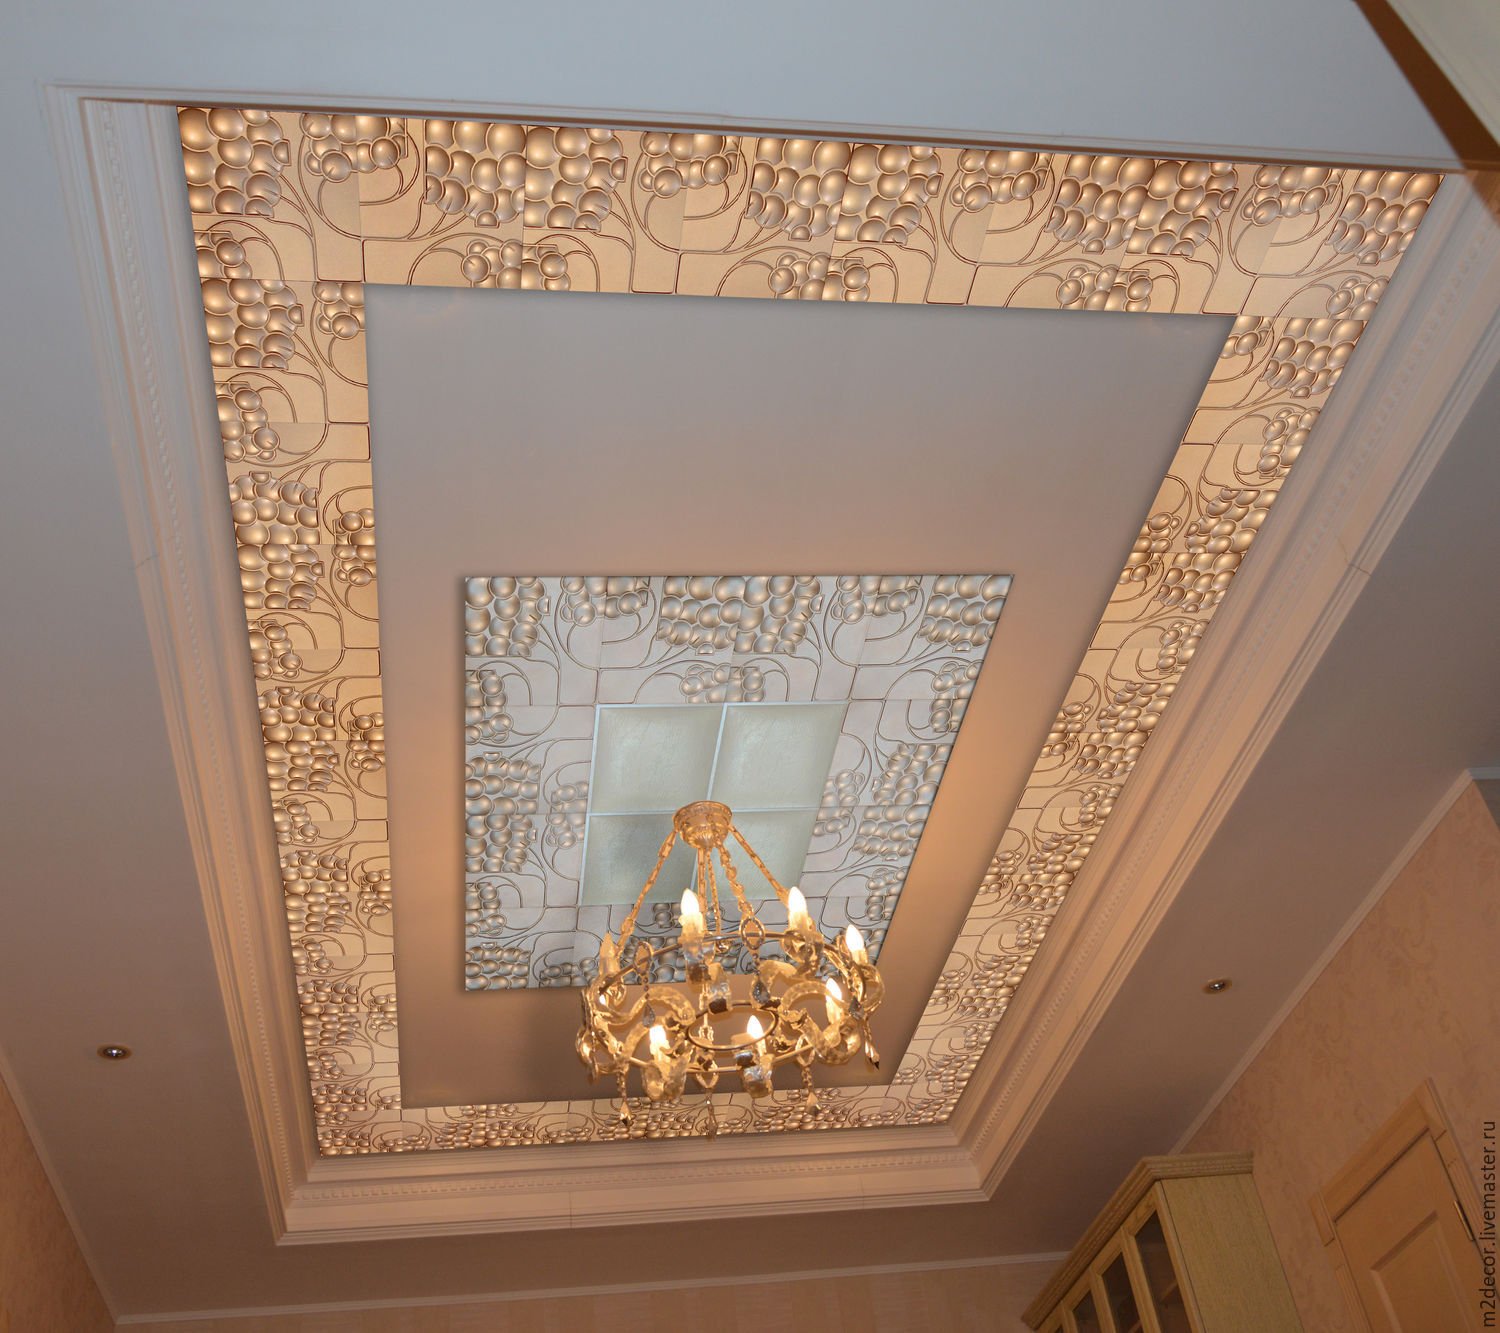 Дизайн потолка в гостиной: 100 фото оформления потолка в зале